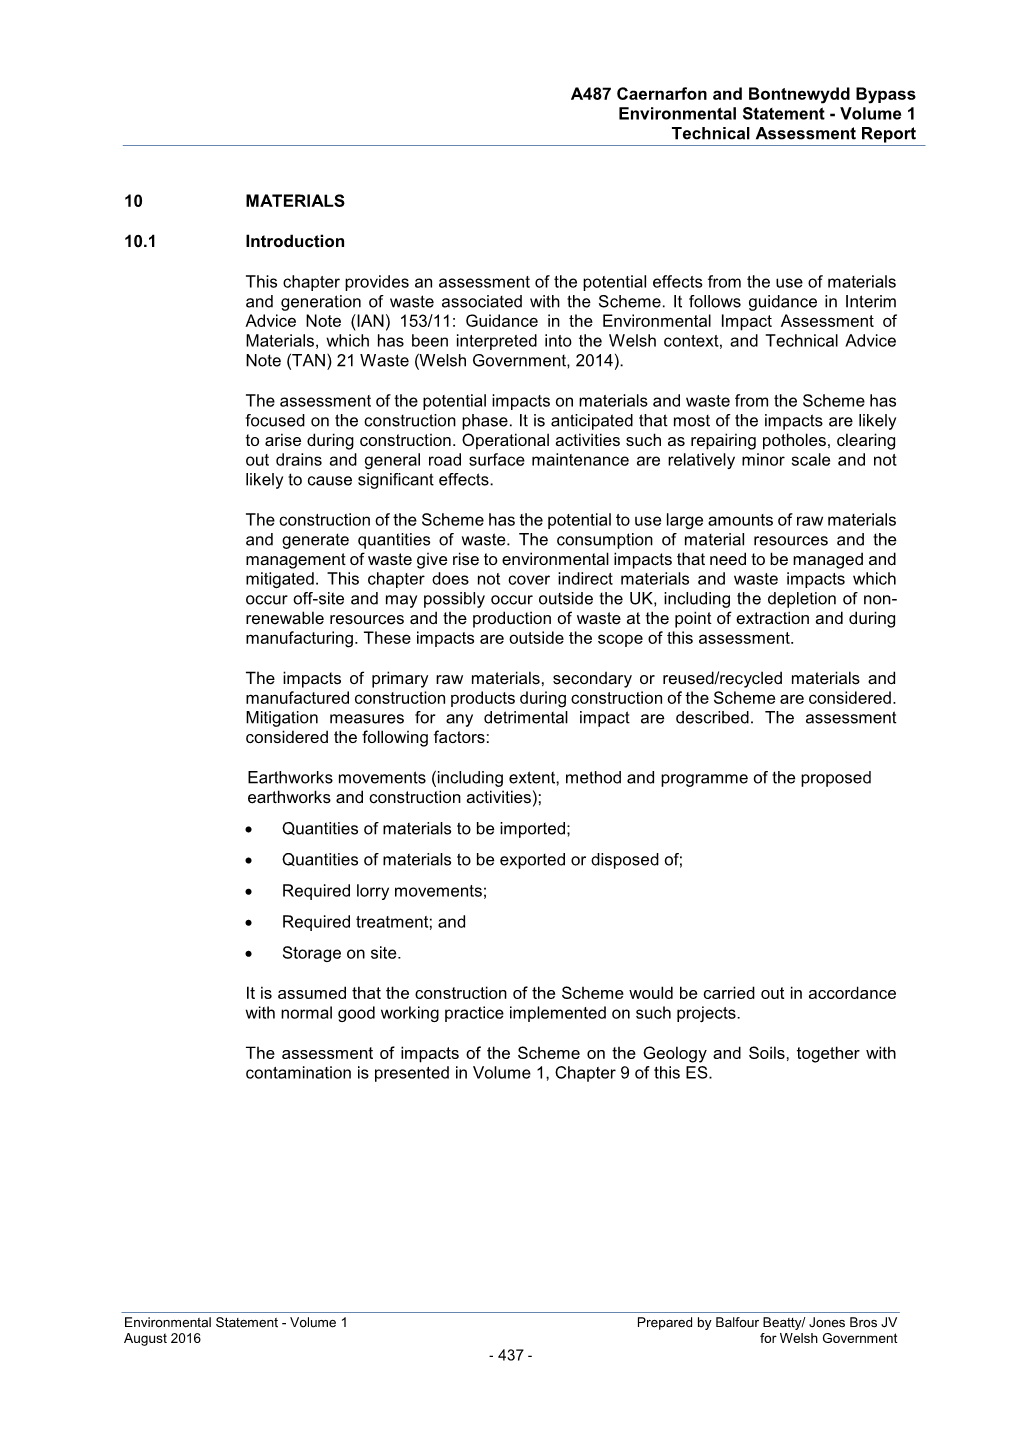 A487 Caernarfon and Bontnewydd Bypass Environmental Statement - Volume 1 Technical Assessment Report